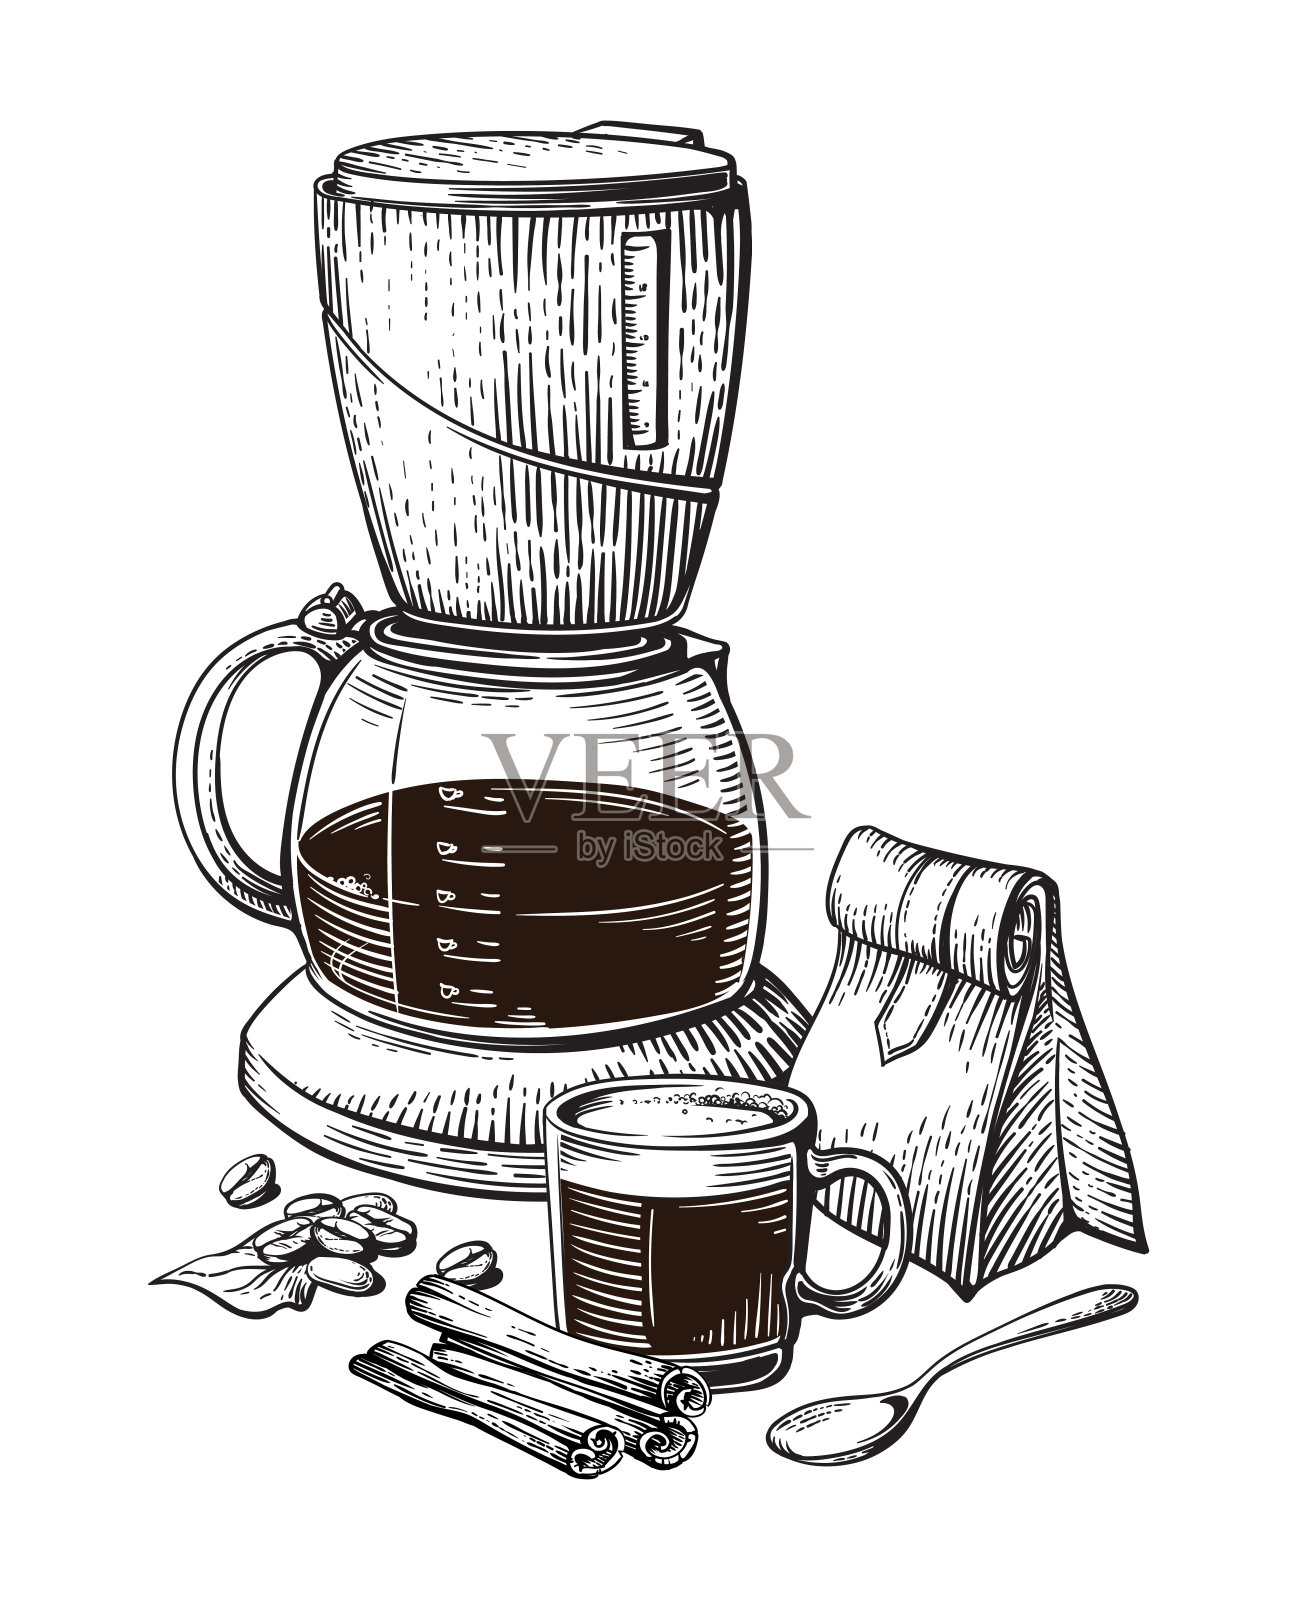 咖啡手画集合向量素描杯袋豆制造者拿铁肉桂插画图片素材